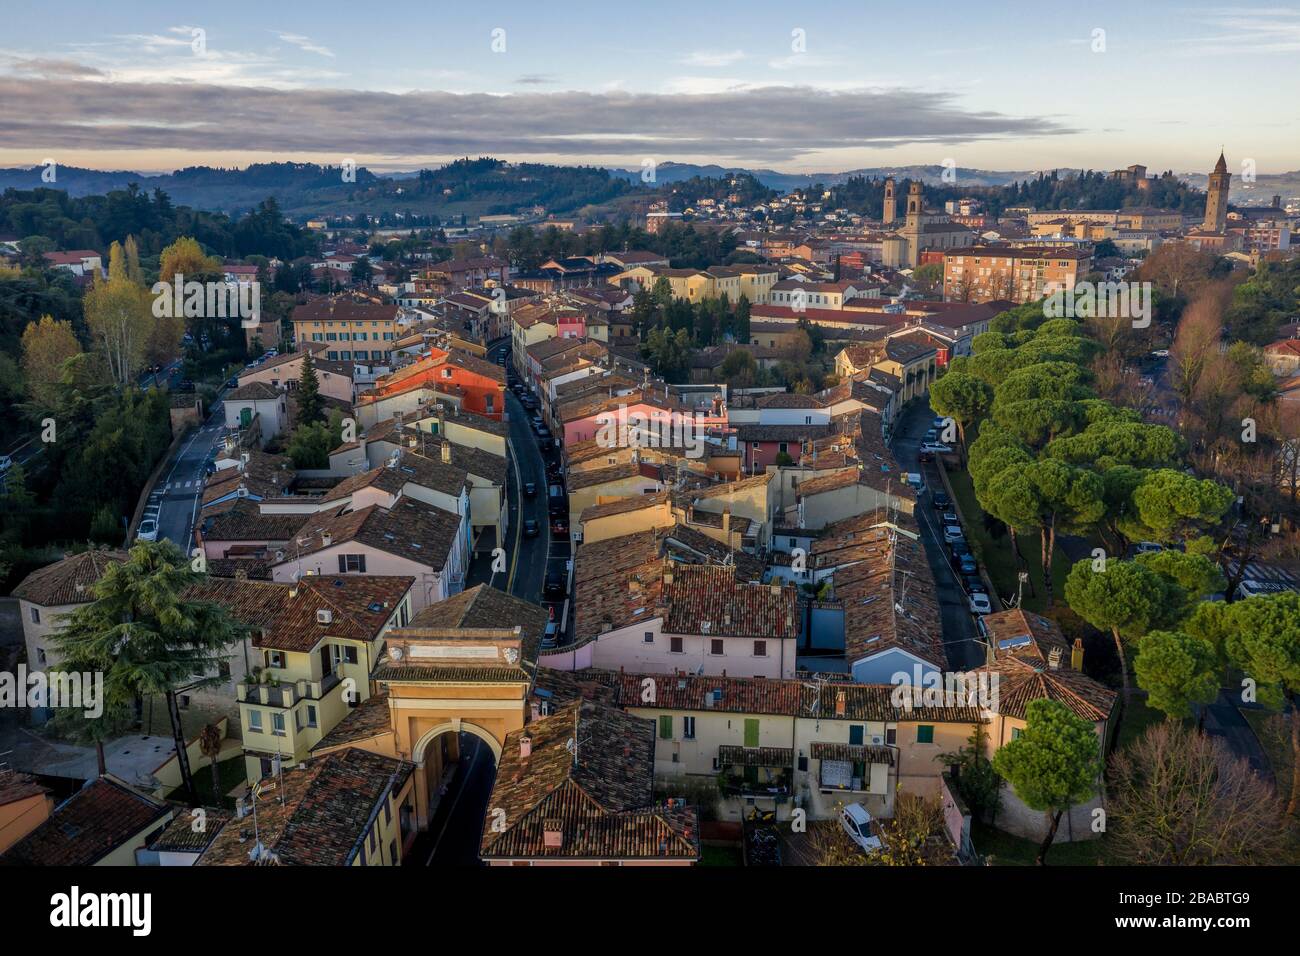 Por la mañana vista aérea de Cesena en Emilia Romagna Italia cerca de Forli y Rimini, con el castillo medieval de Malatestiana, Piazza del Popolo y Cathol Romano Foto de stock